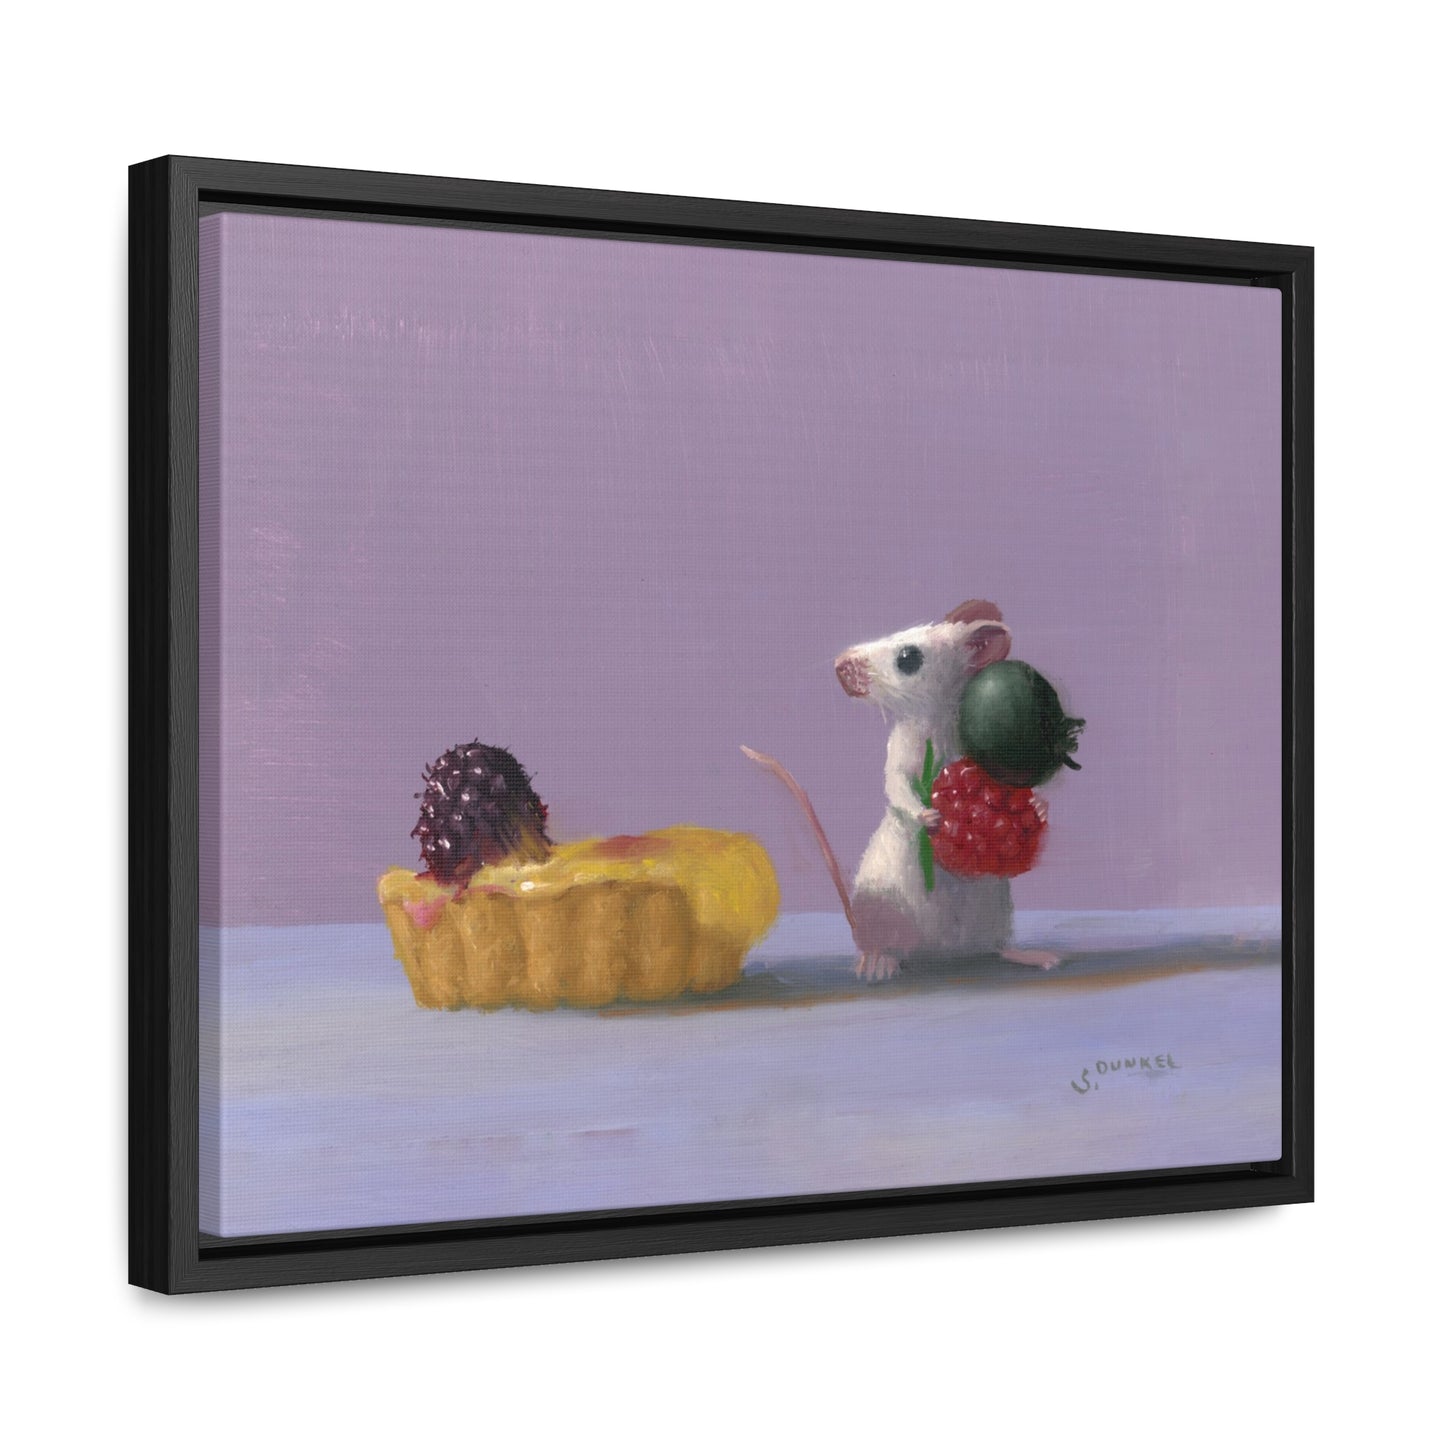 Stuart Dunkel: "Tart Shopping" - Framed Canvas Reproduction